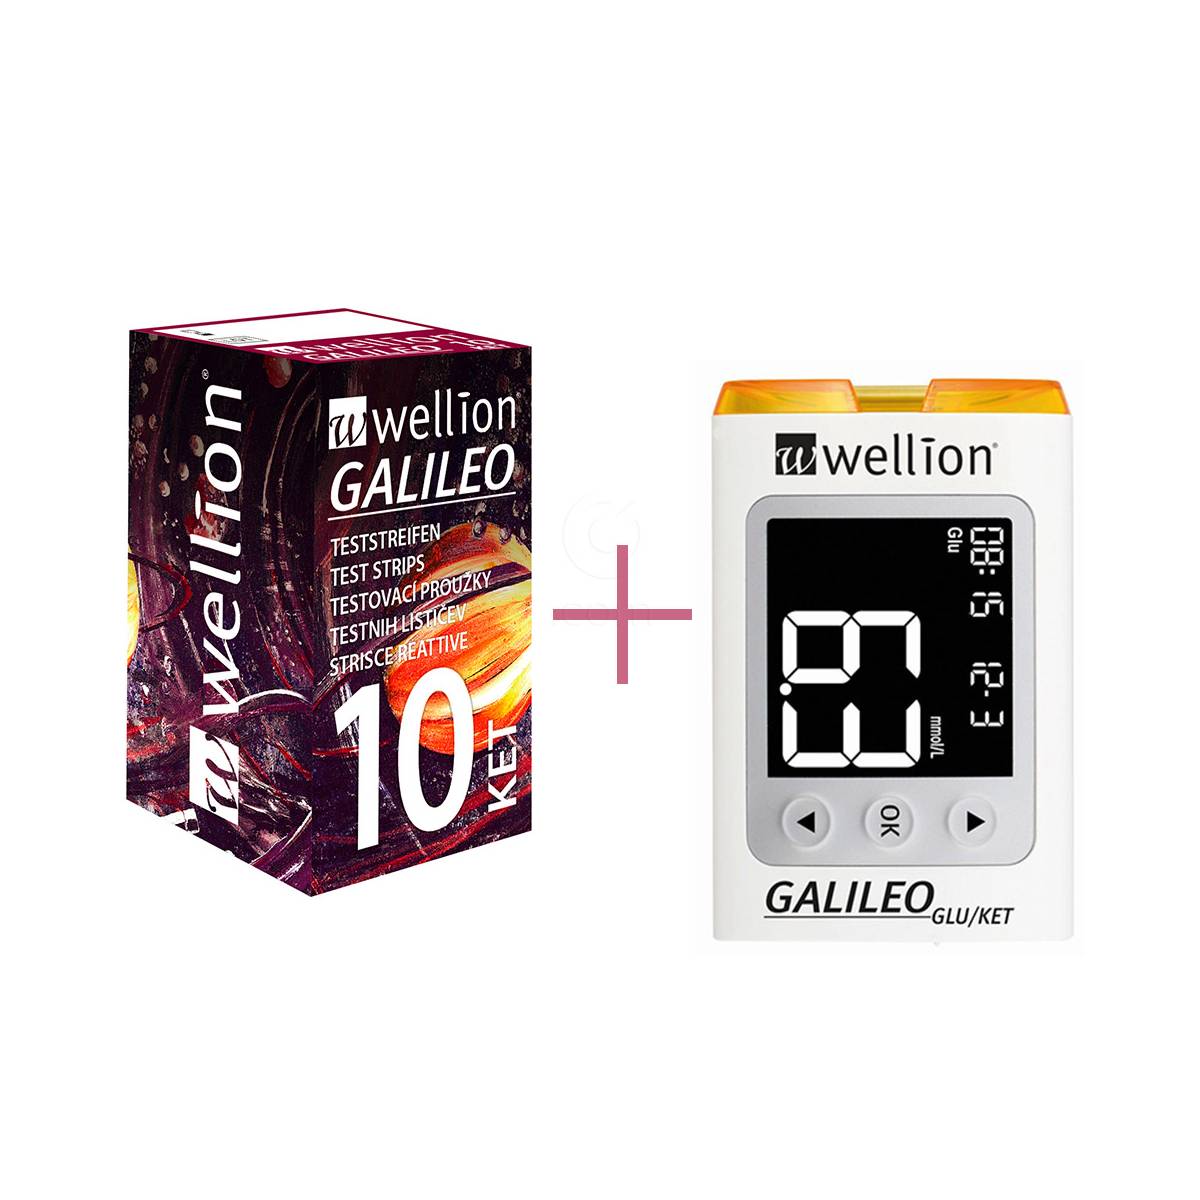 Merilni lističi za ketone – Wellion Galileo